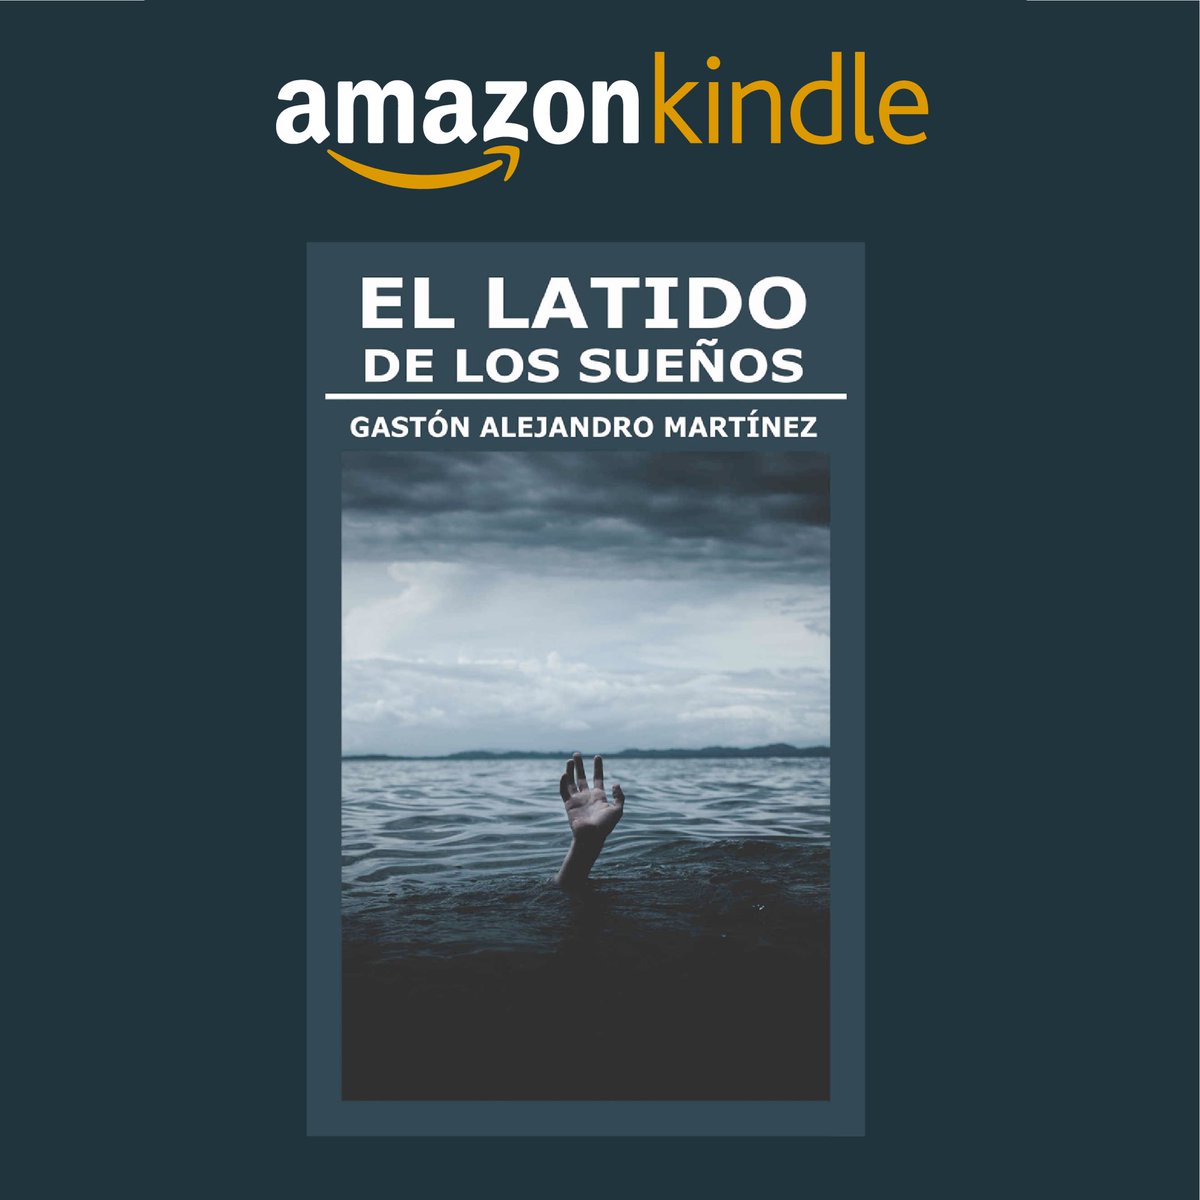 El latido de los sueños, mi novela, está disponible en Amazon Kindle a.co/d/0zXszmd #libros #novela #escritor #literatura #recomendaciones #literarias #clubdelectura #escritoresmexicanos